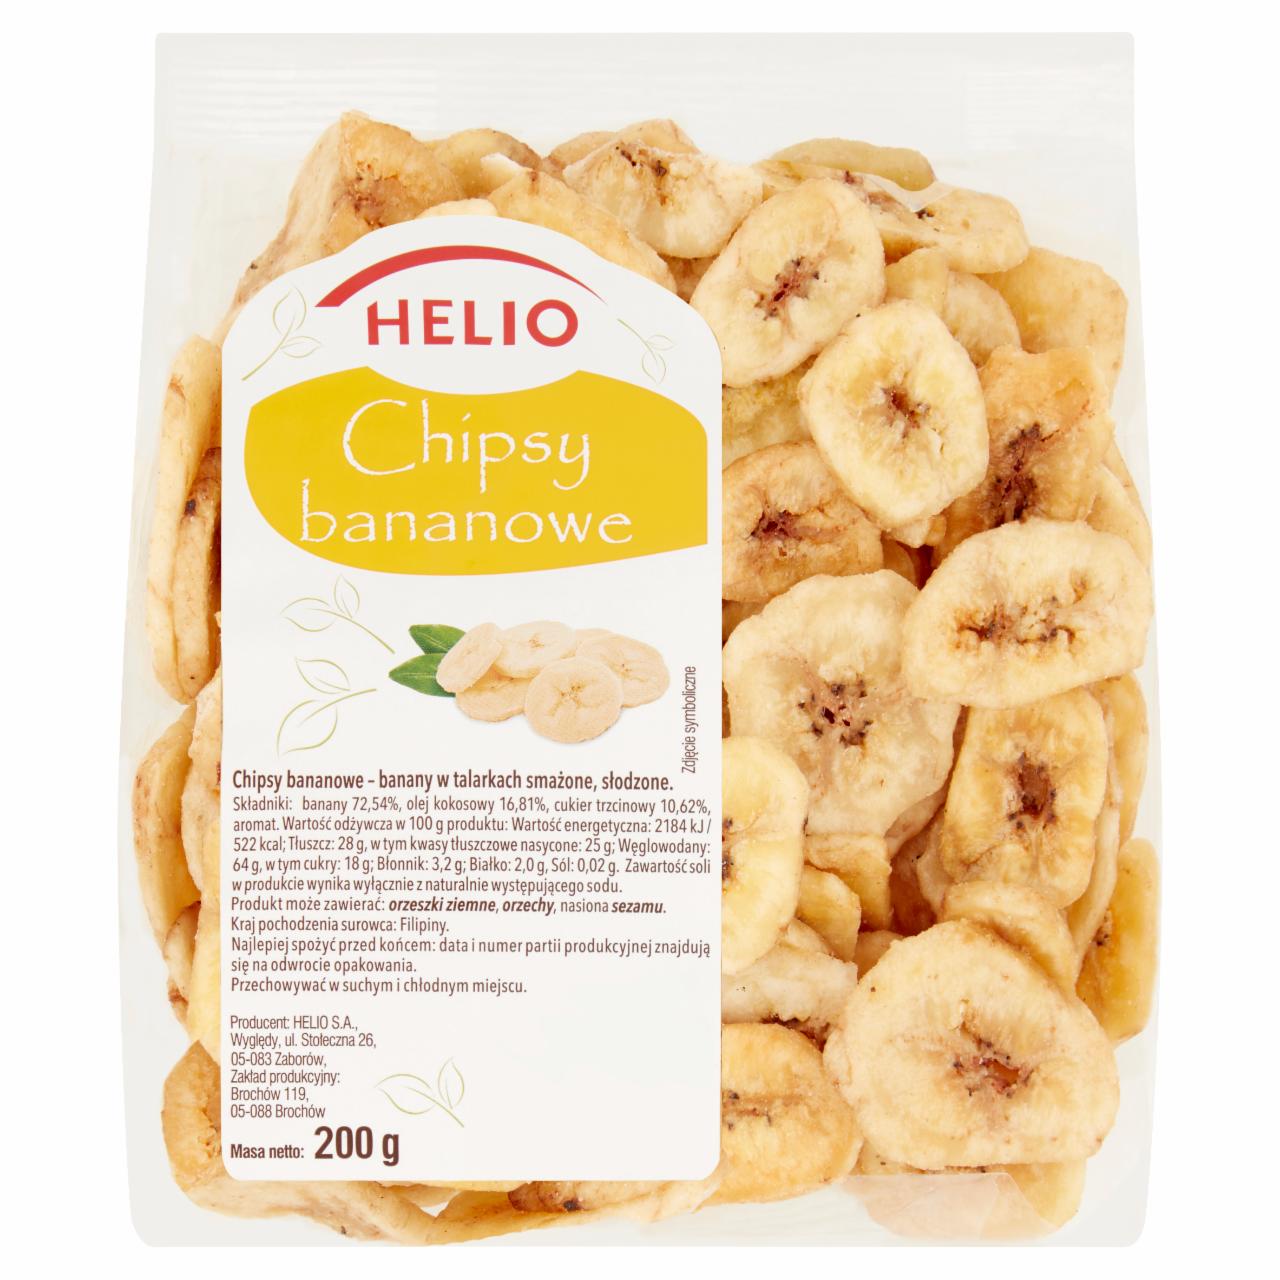 Zdjęcia - Helio Chipsy bananowe 200 g